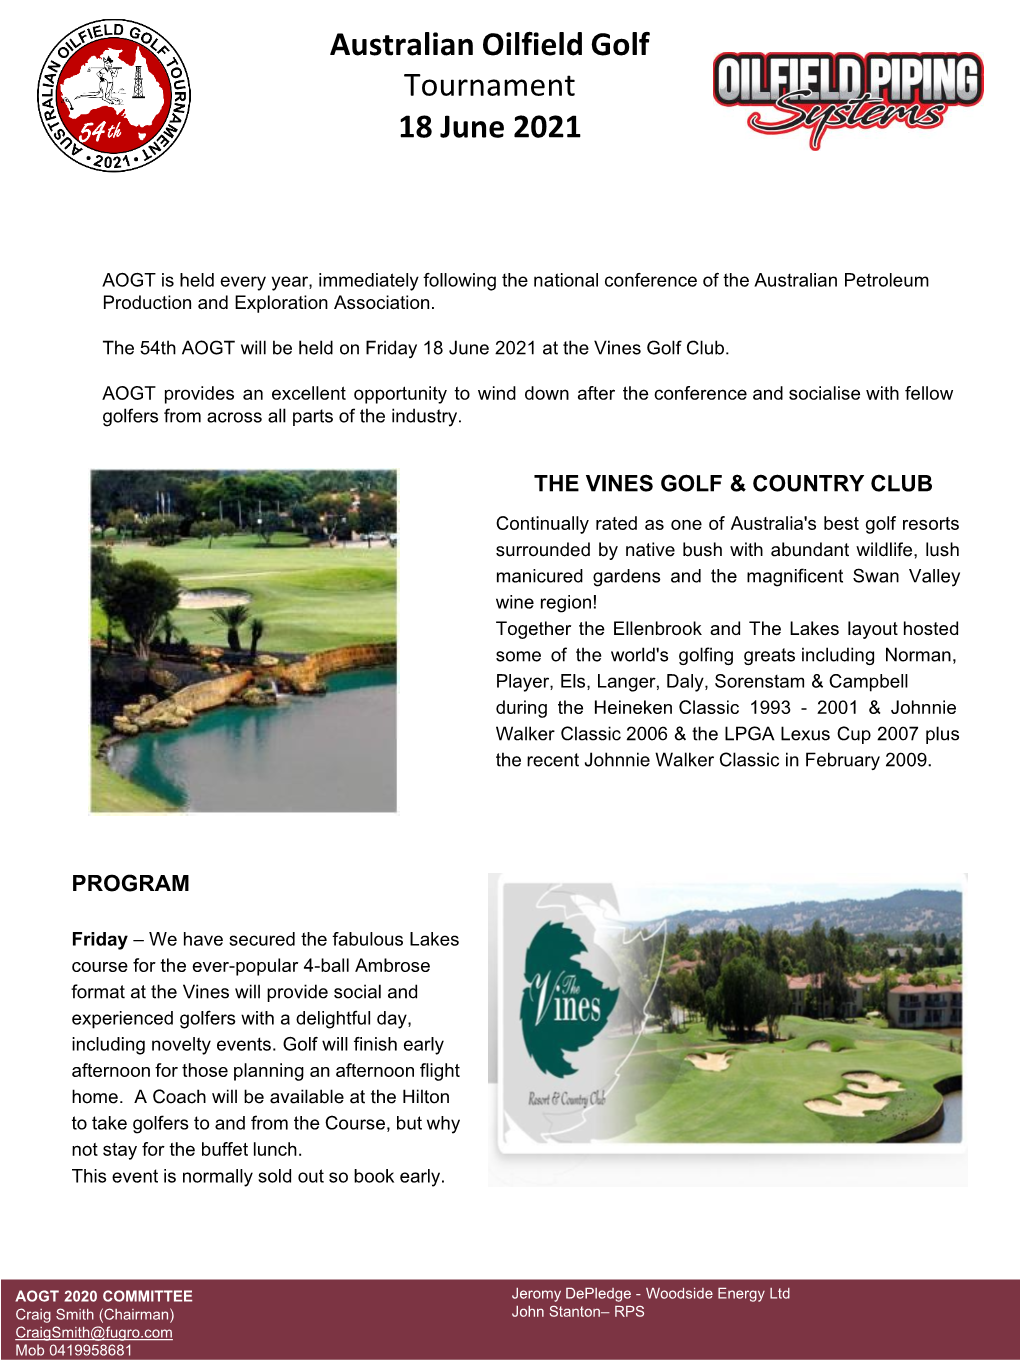 Australian Oilfield Golf Tournament 18 June 2021